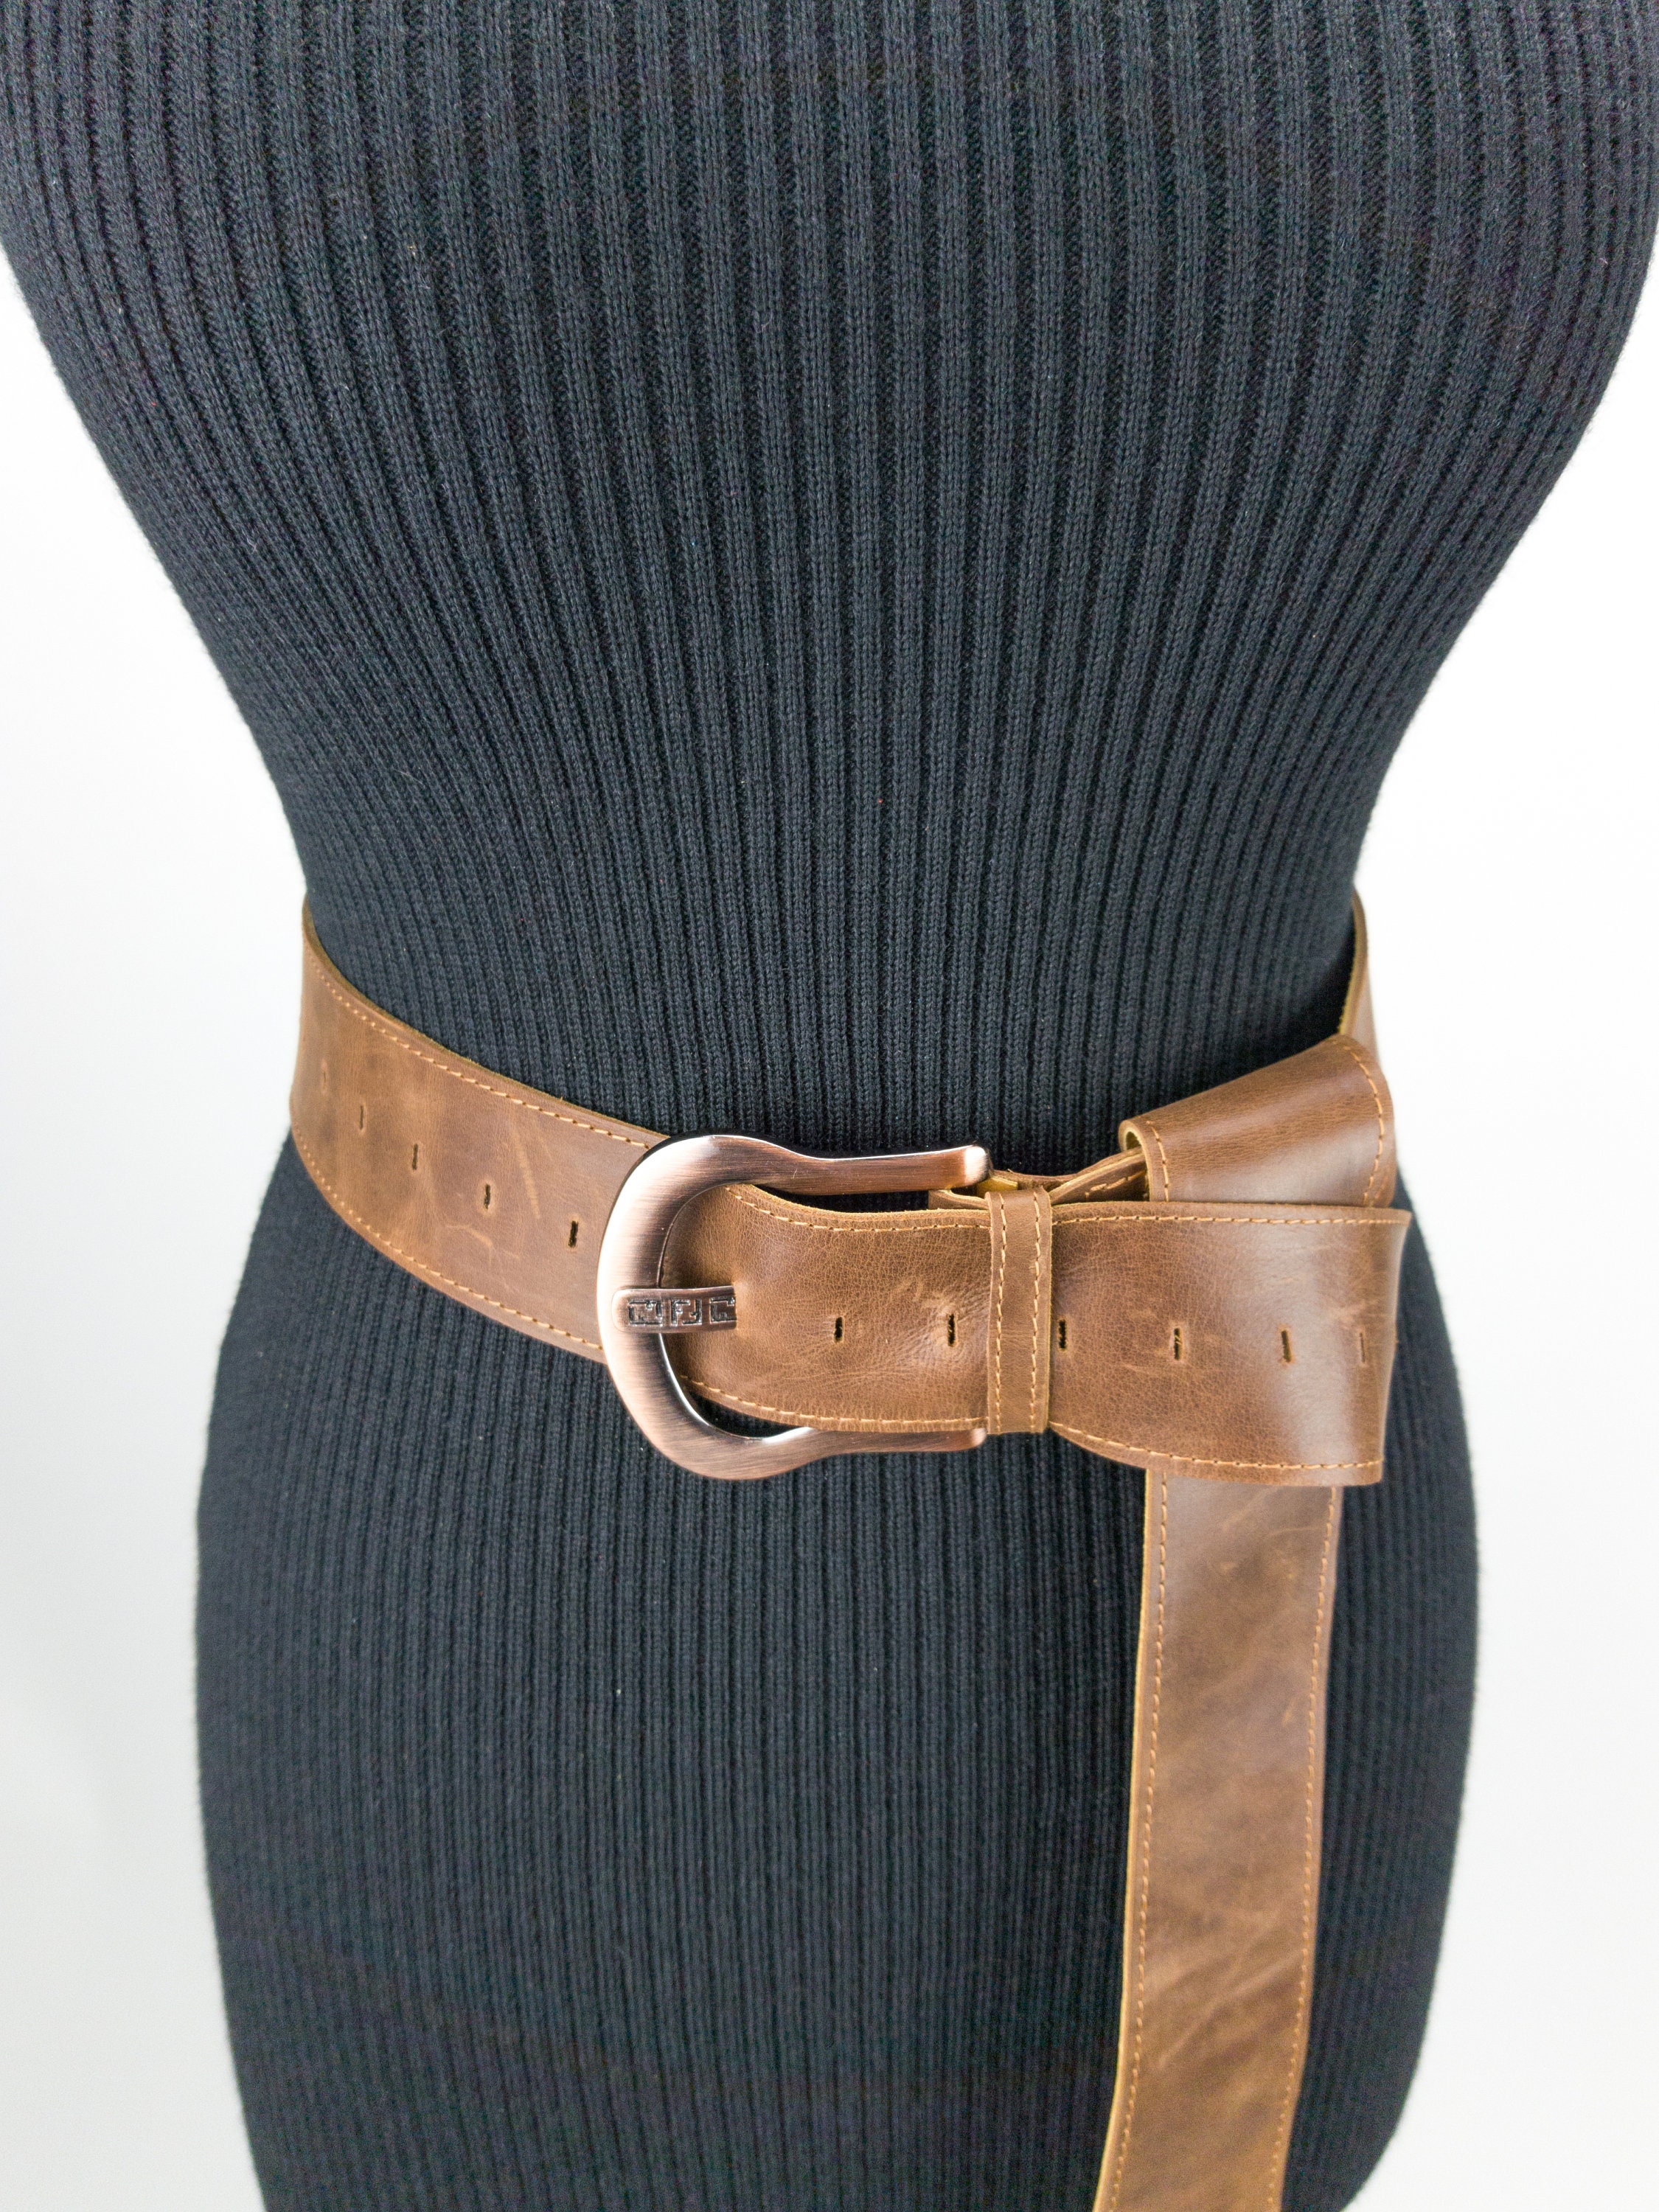 Extra Long Leather Buckle Belt Long Women Belt Brown Tan | Etsy